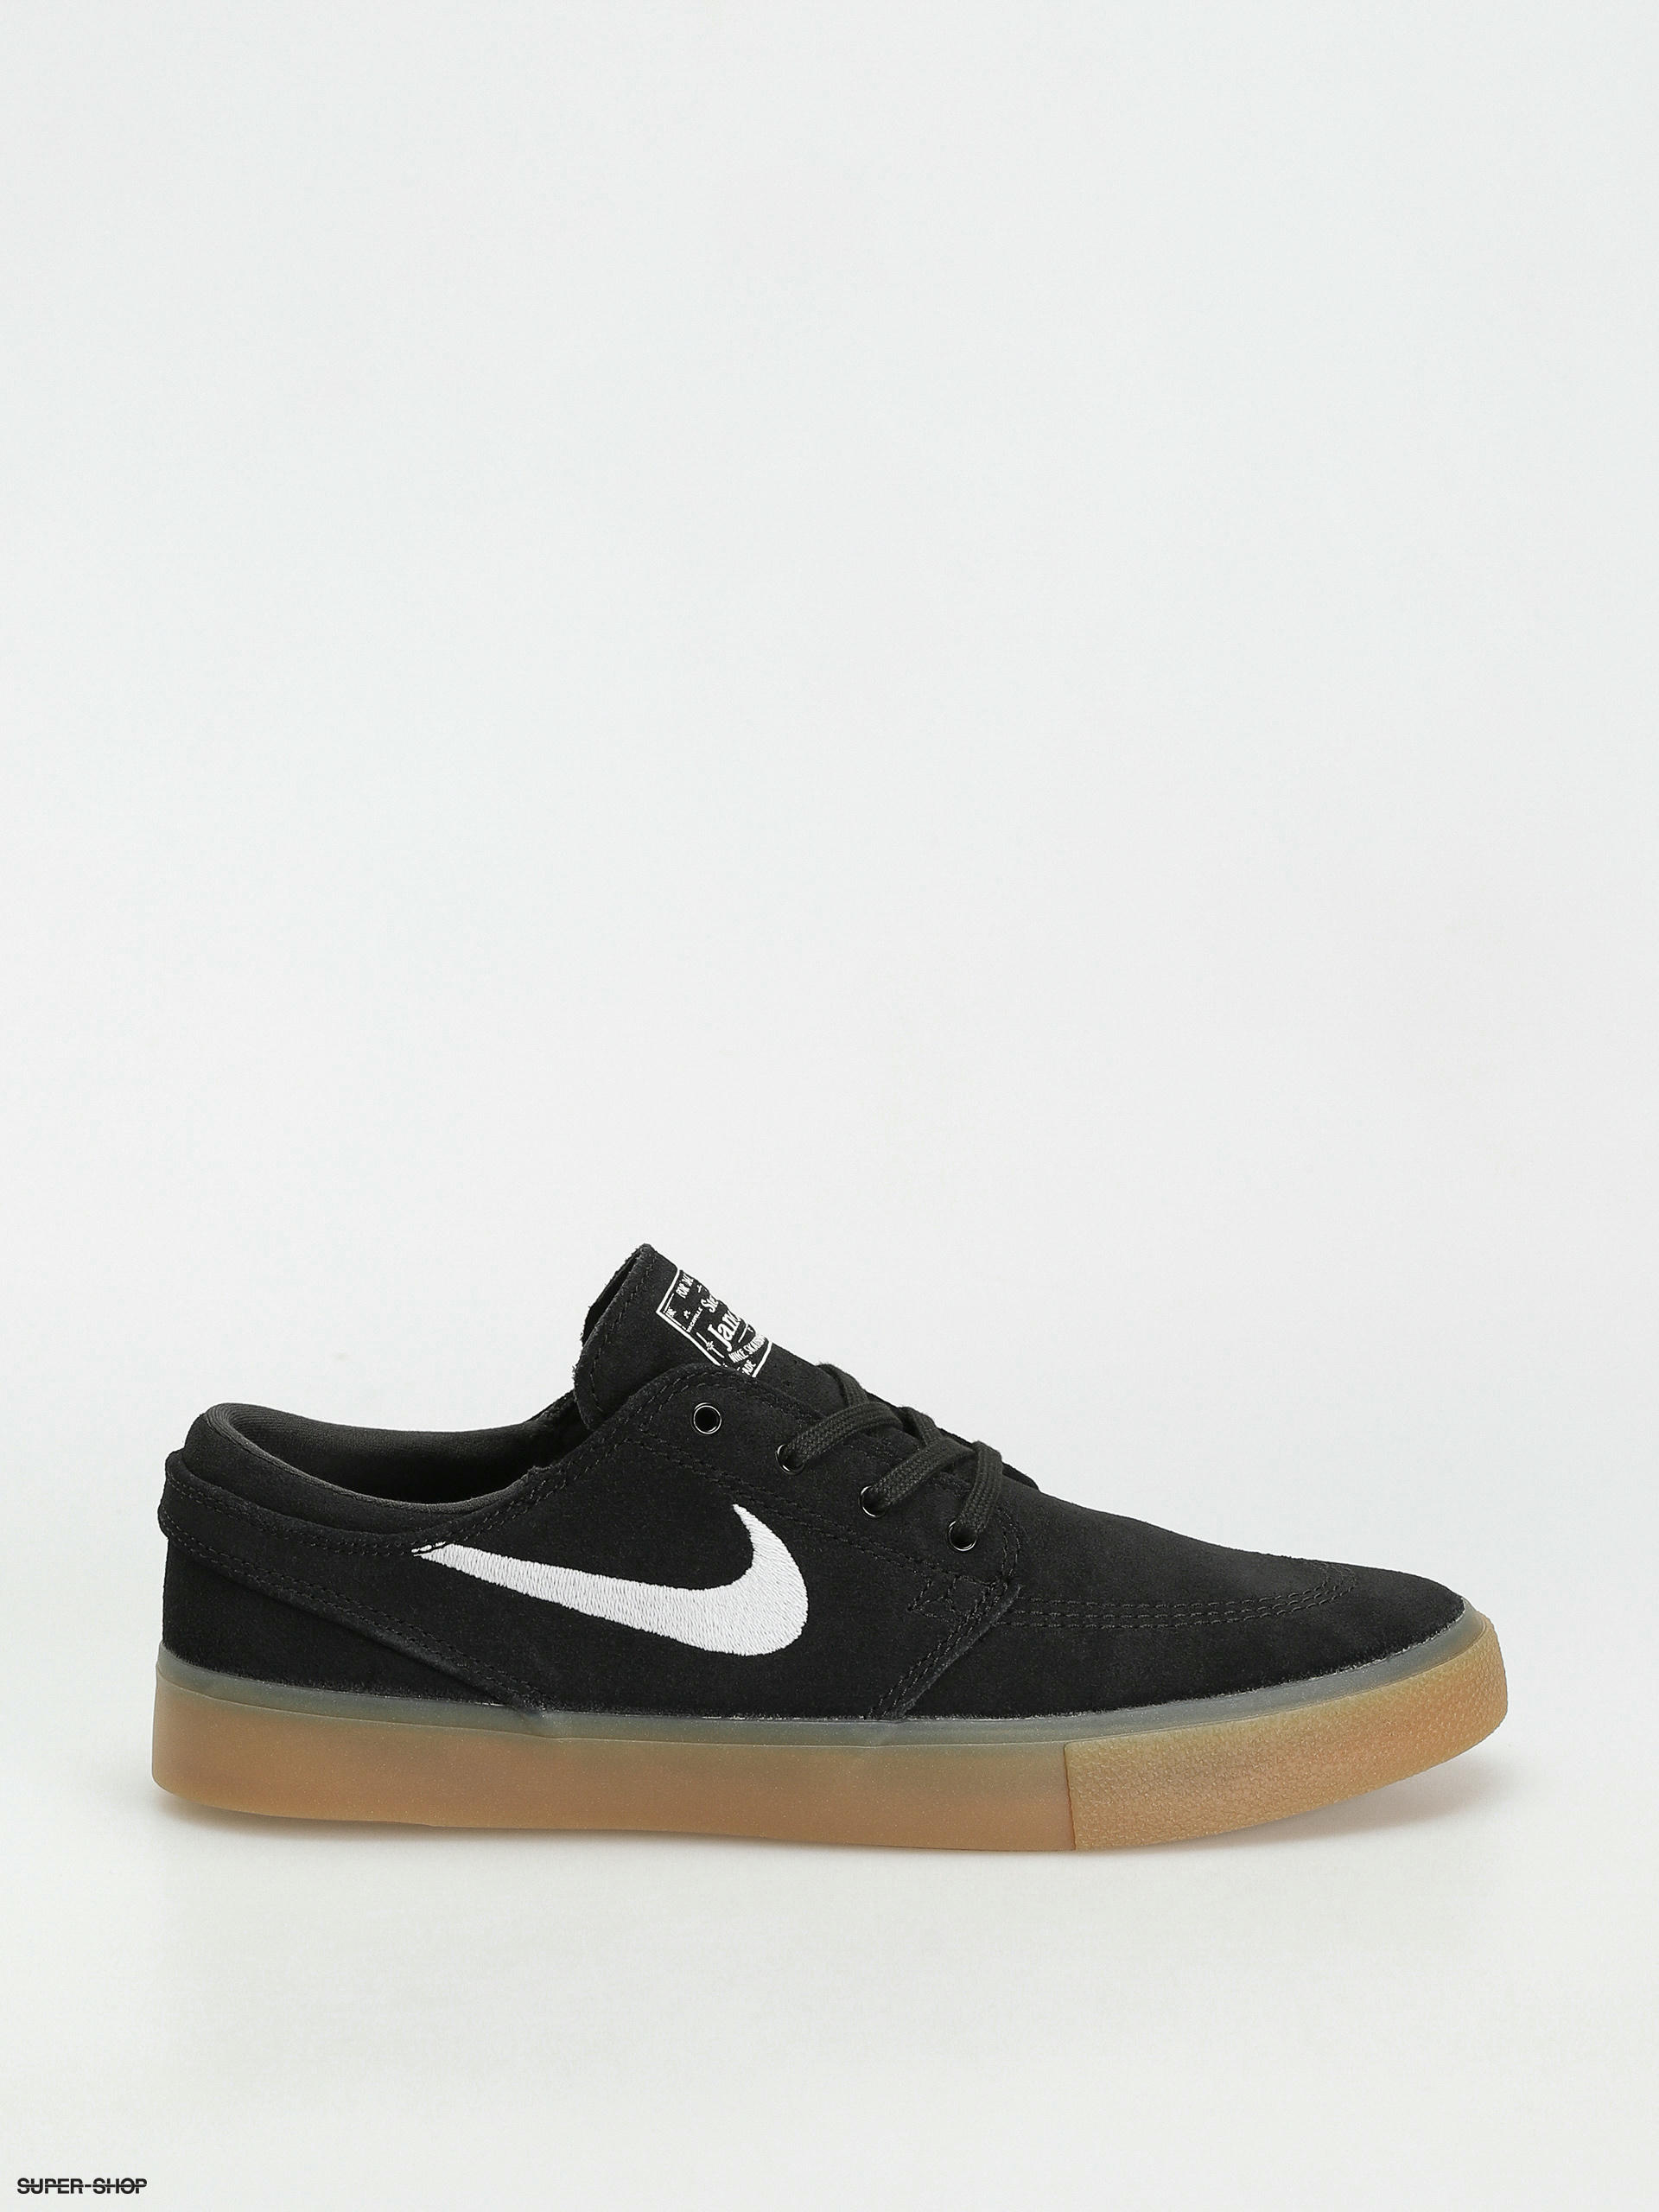 Nike SB Zoom Rm Shoes black gum brown)